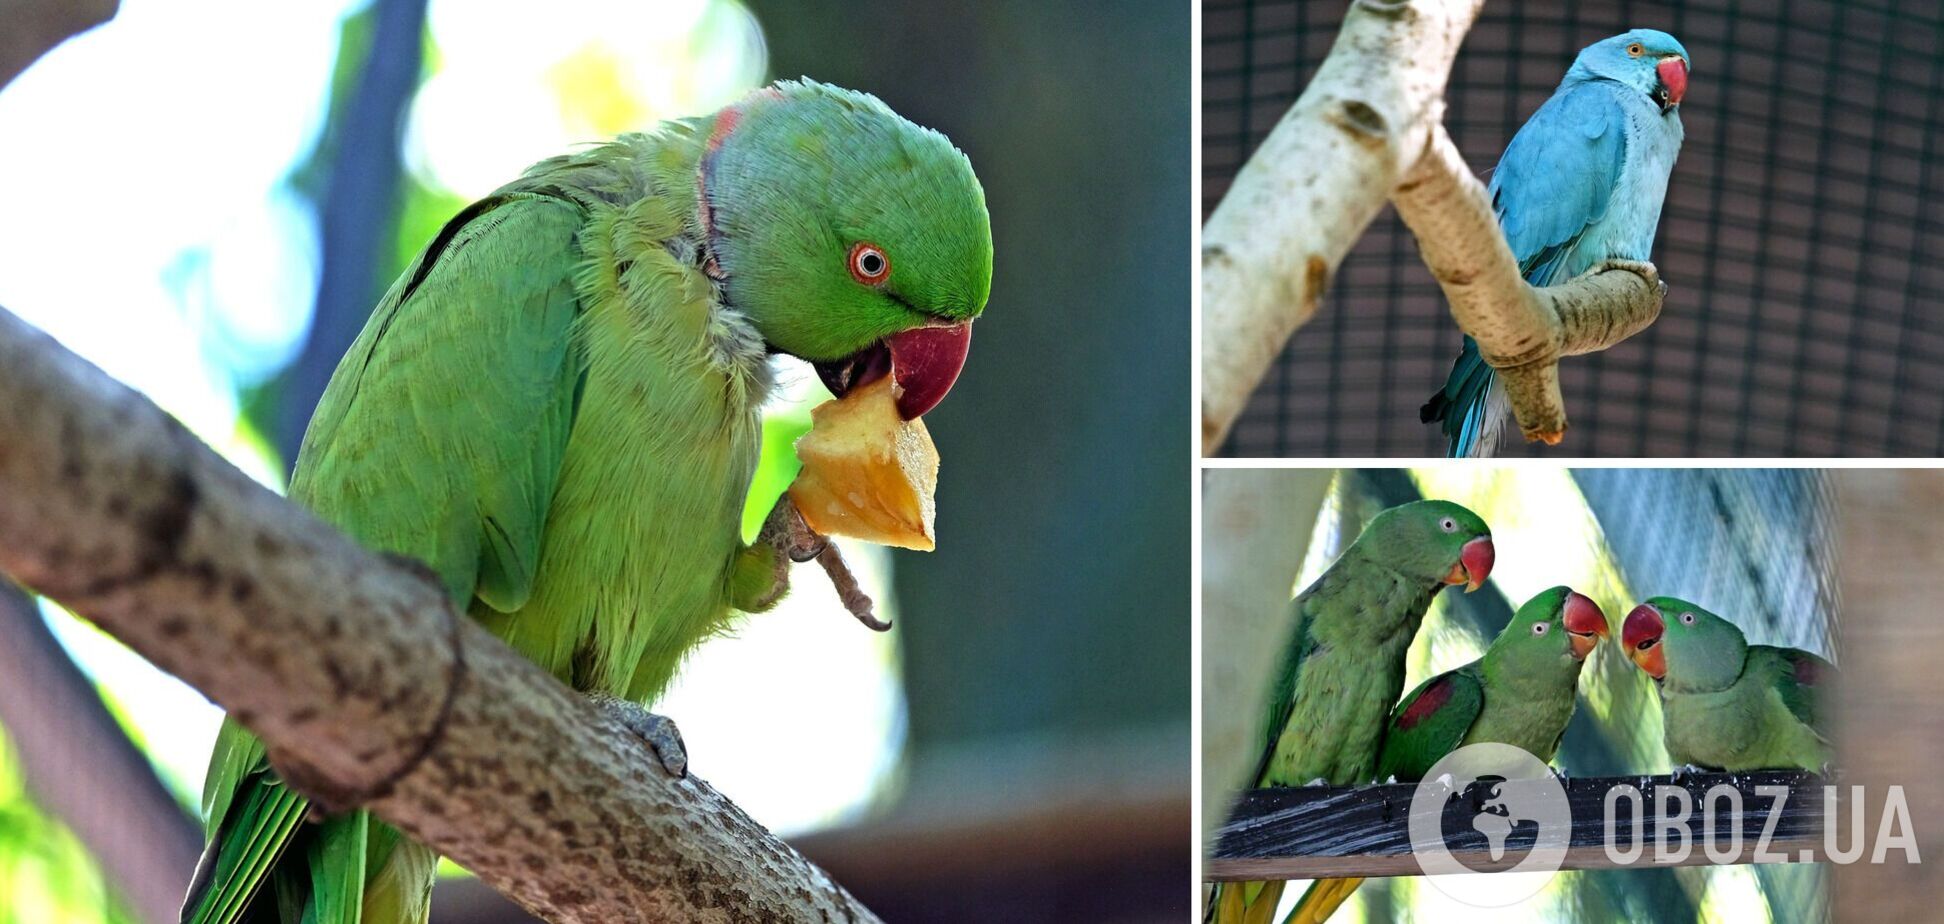 В зоопарке для спасенных попугаев создали новый вольер